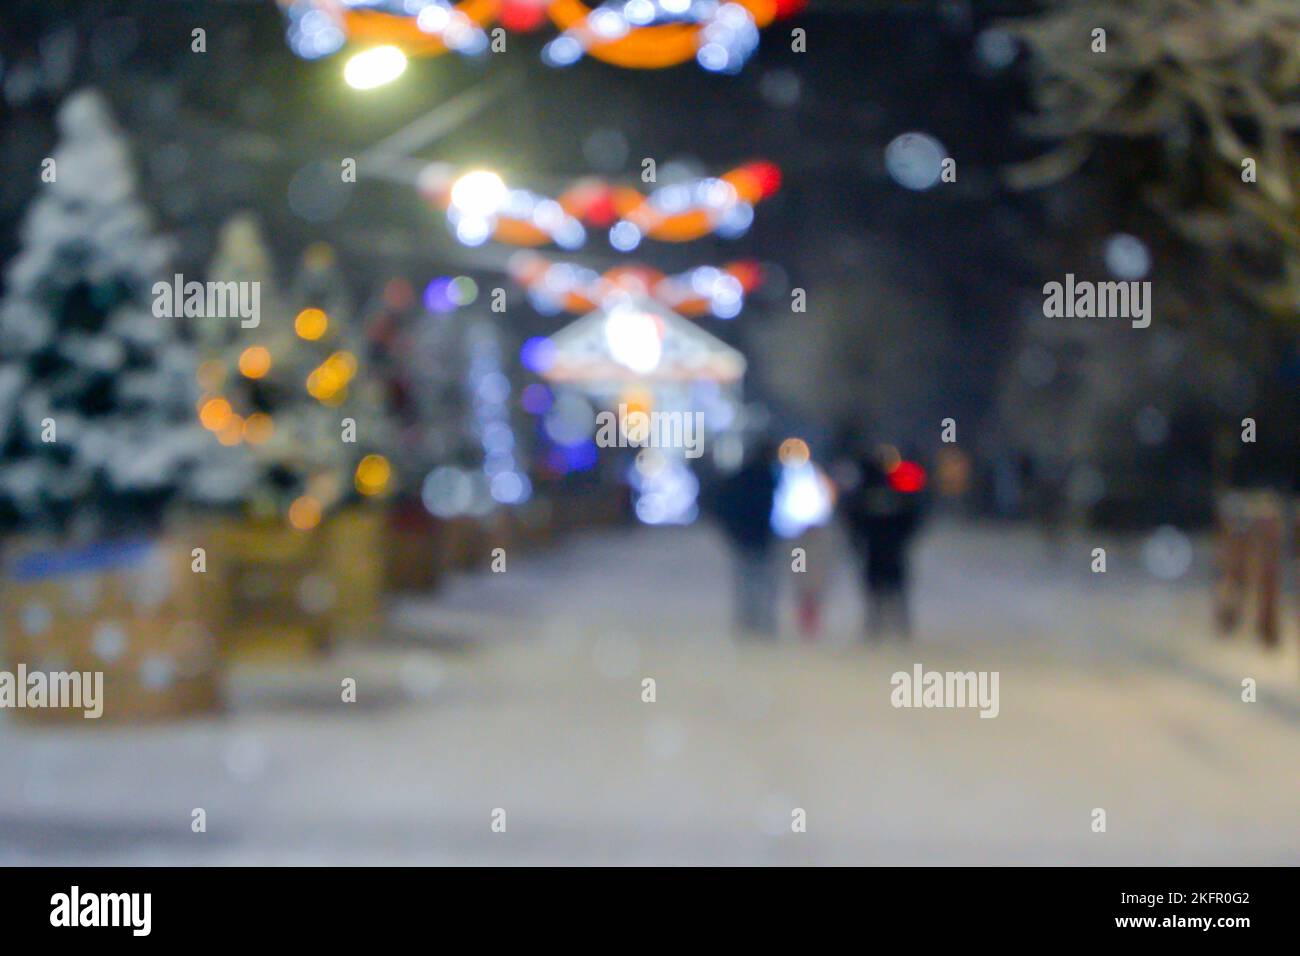 Résumé arrière-plan flou. Personnes marchant dans la rue d'arbres de Noël décorés décorés avec éclairage lumineux, lumières lumineuses et guirlandes dans la ville pendant de fortes chutes de neige la nuit d'hiver Banque D'Images